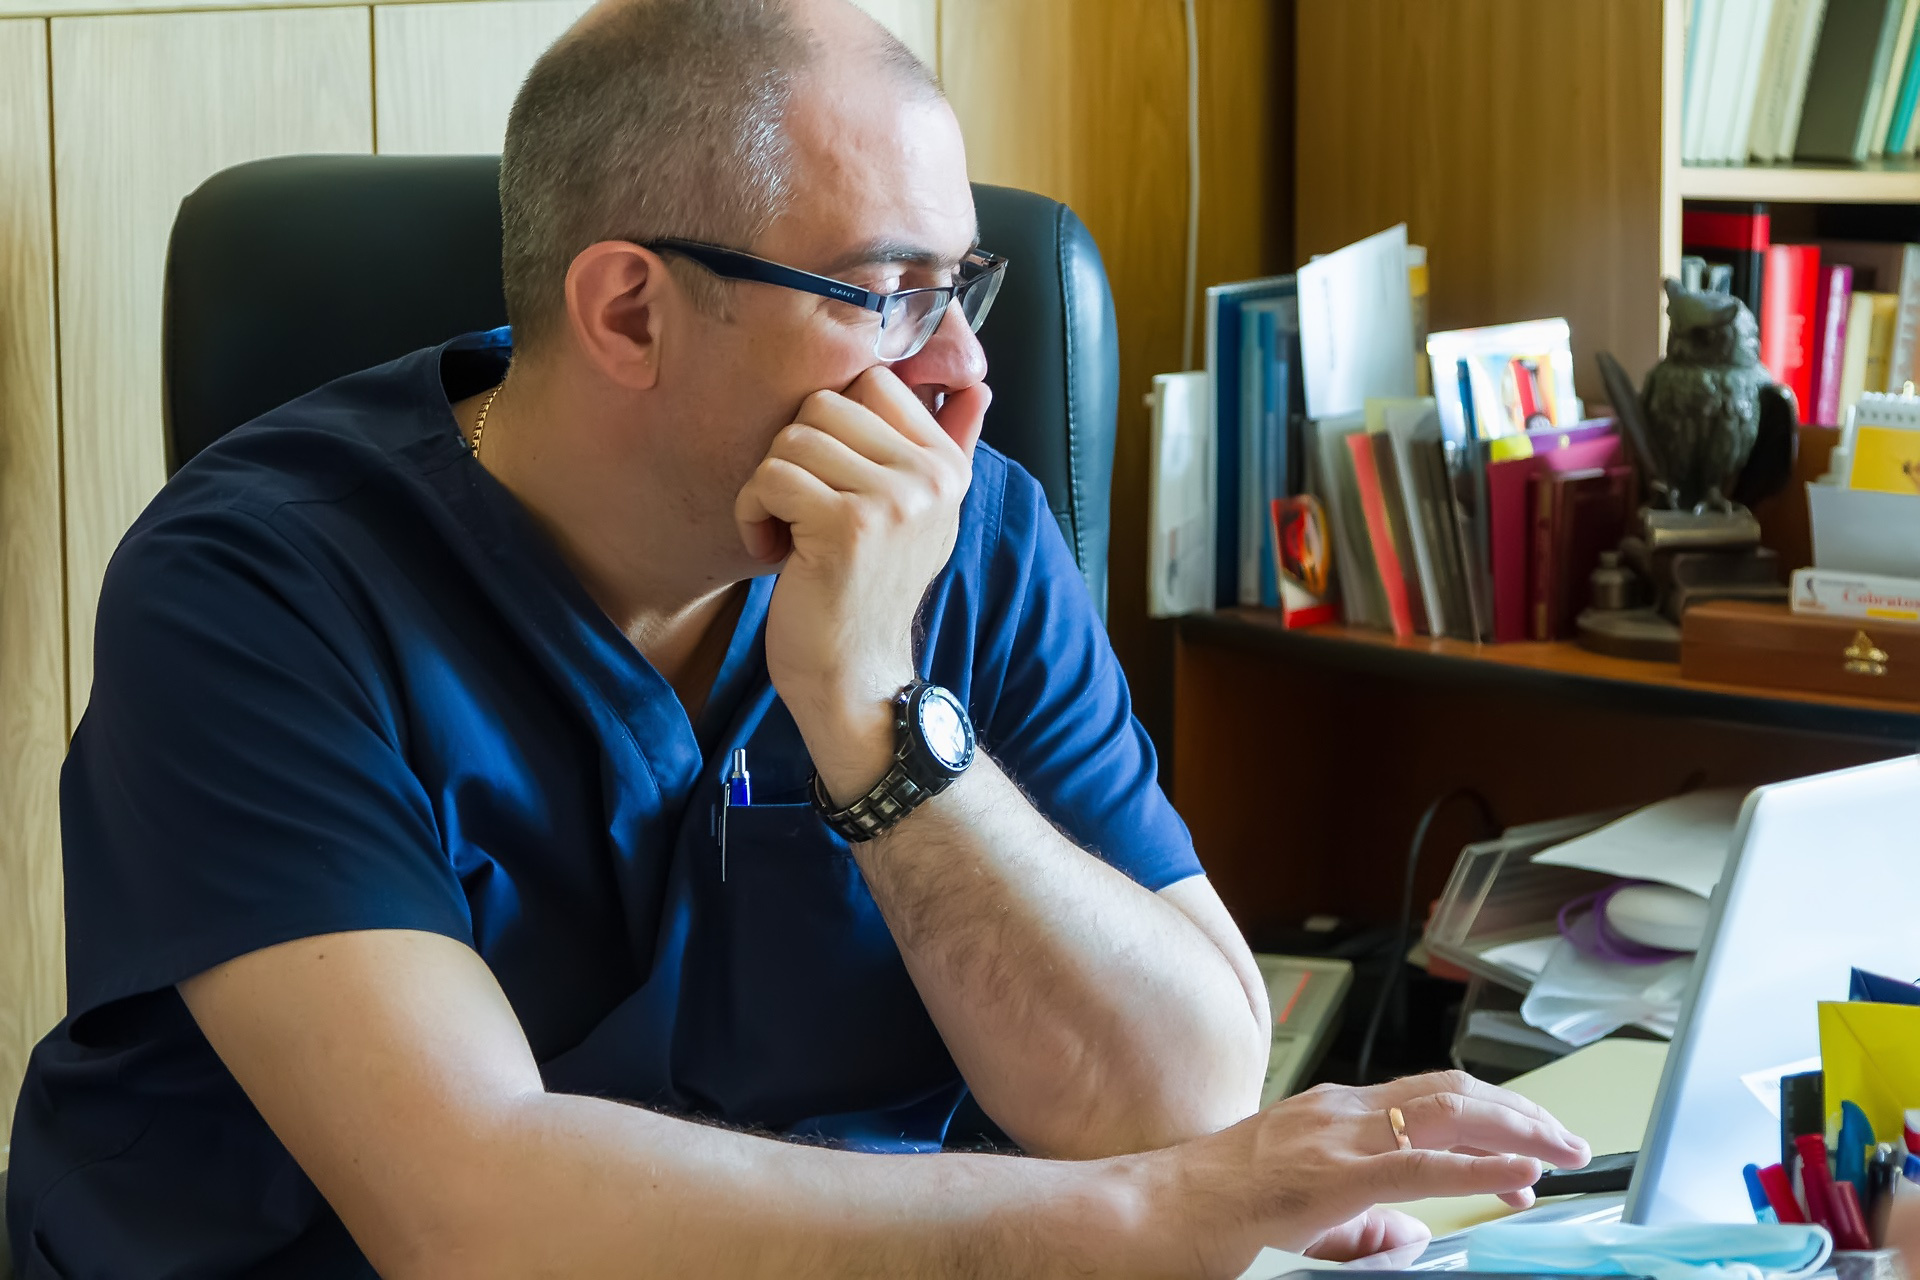 Василий Фастаковский мечтает, что уже во второй половине года в отделении появится новая операционная стойка